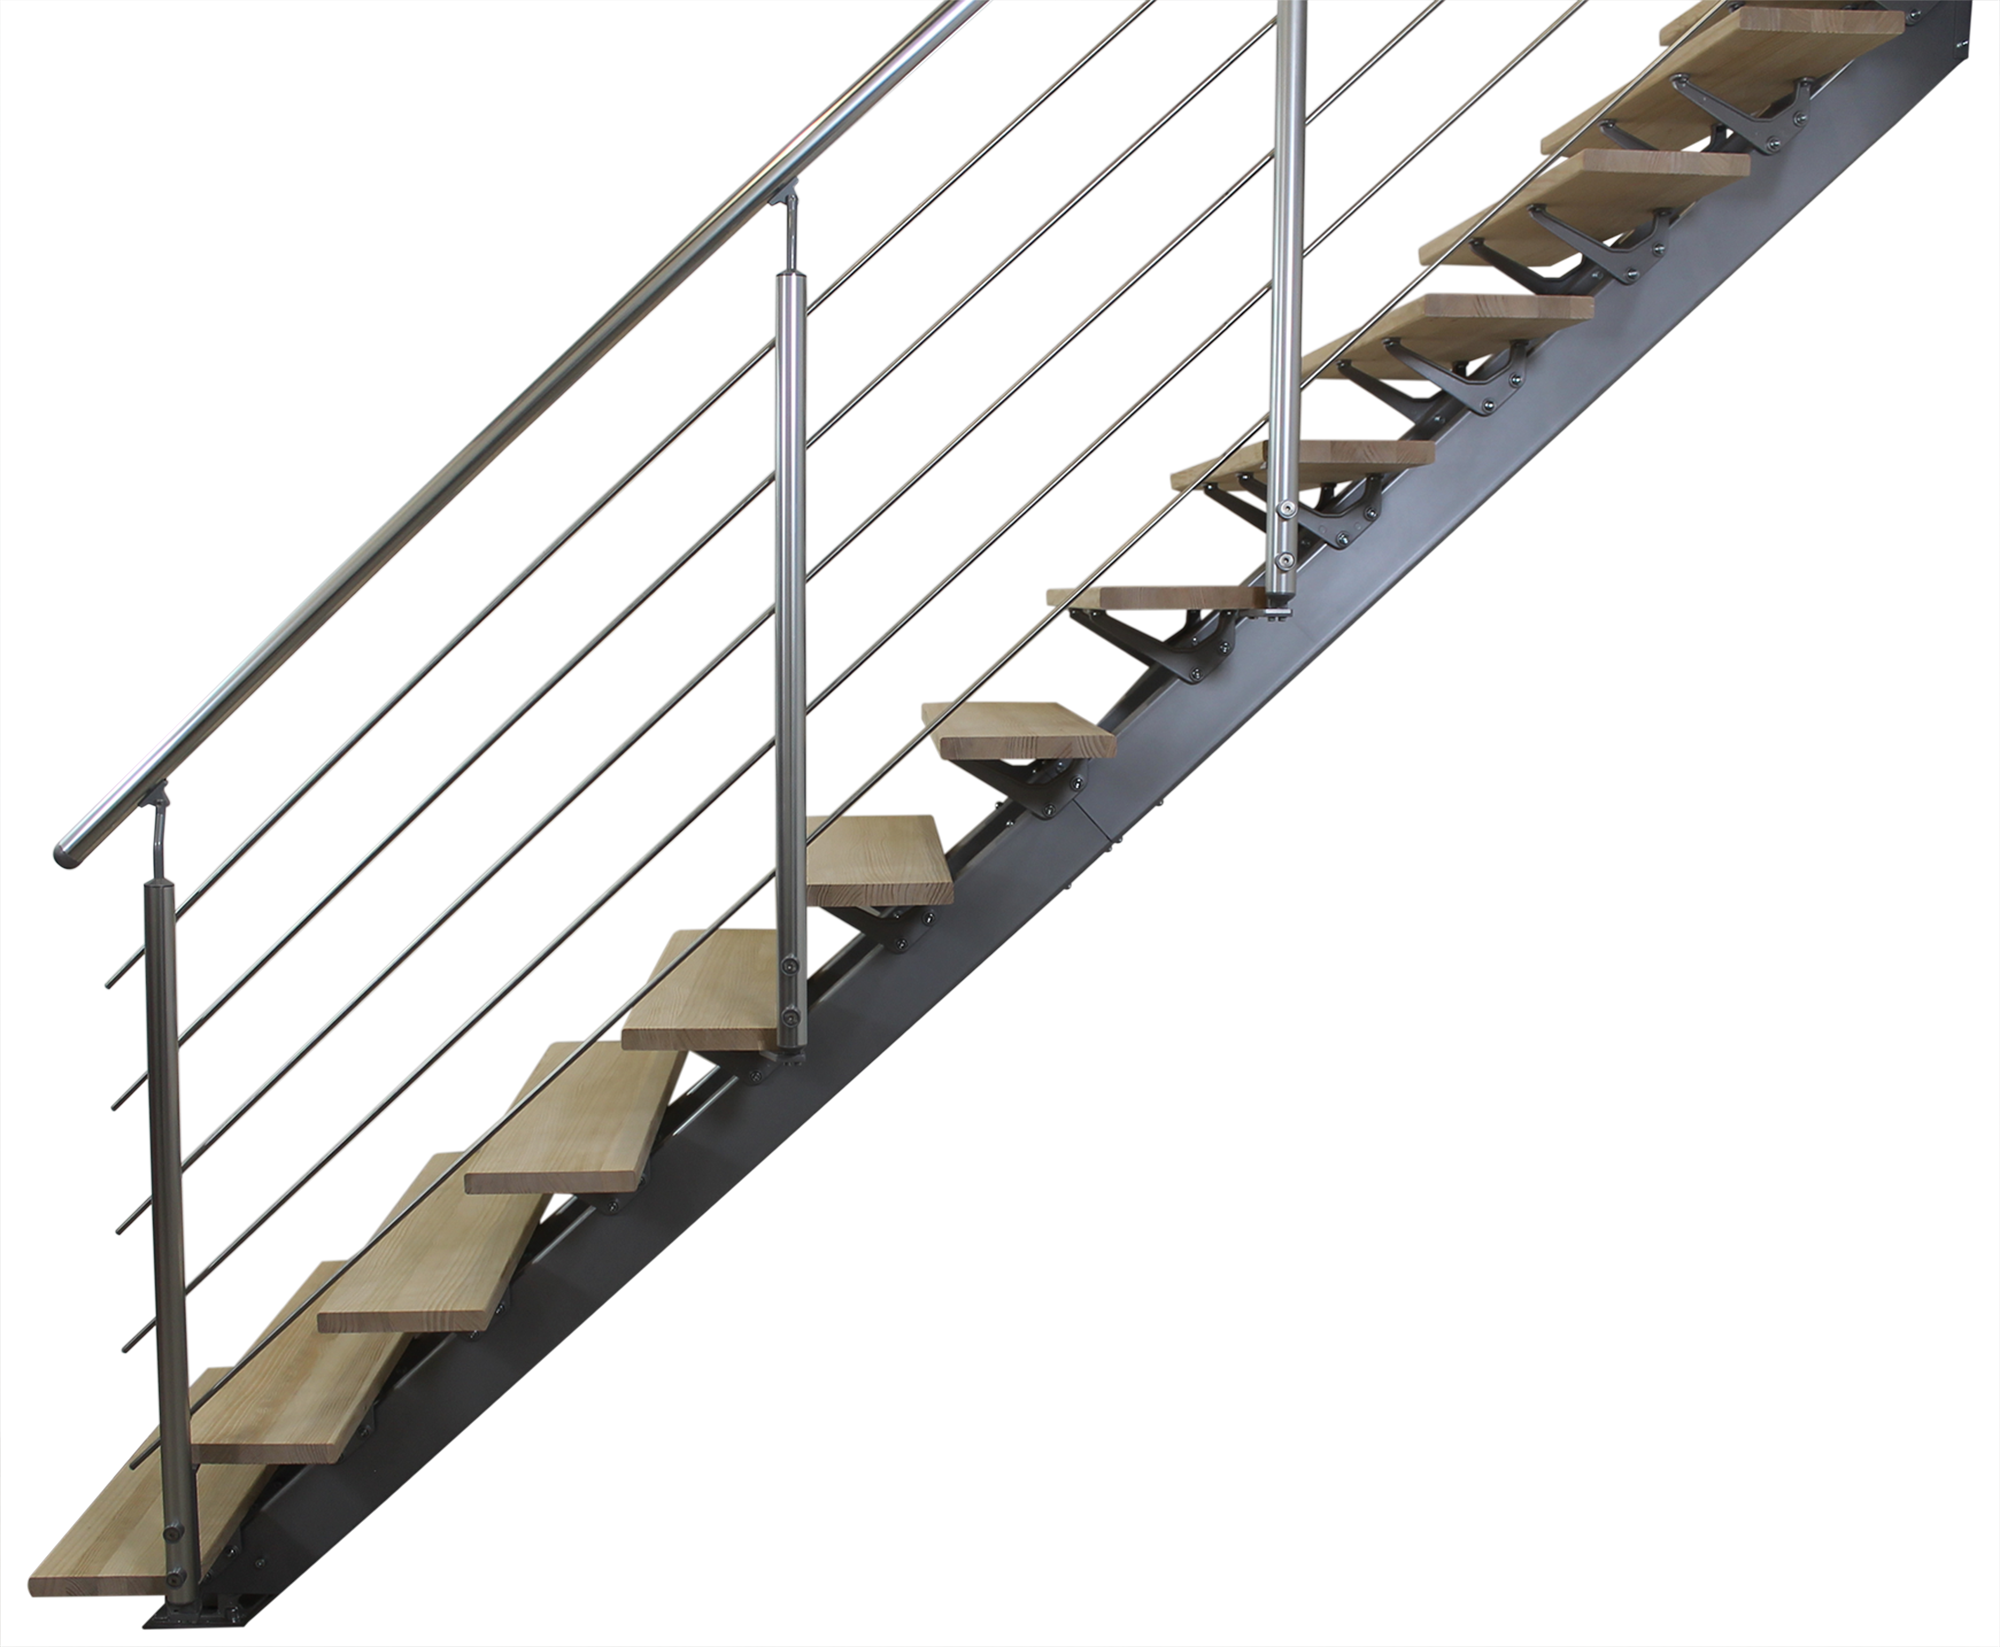 Escalera recta doble viga uso interior ancho total 95cm acabado gris/pino/alum